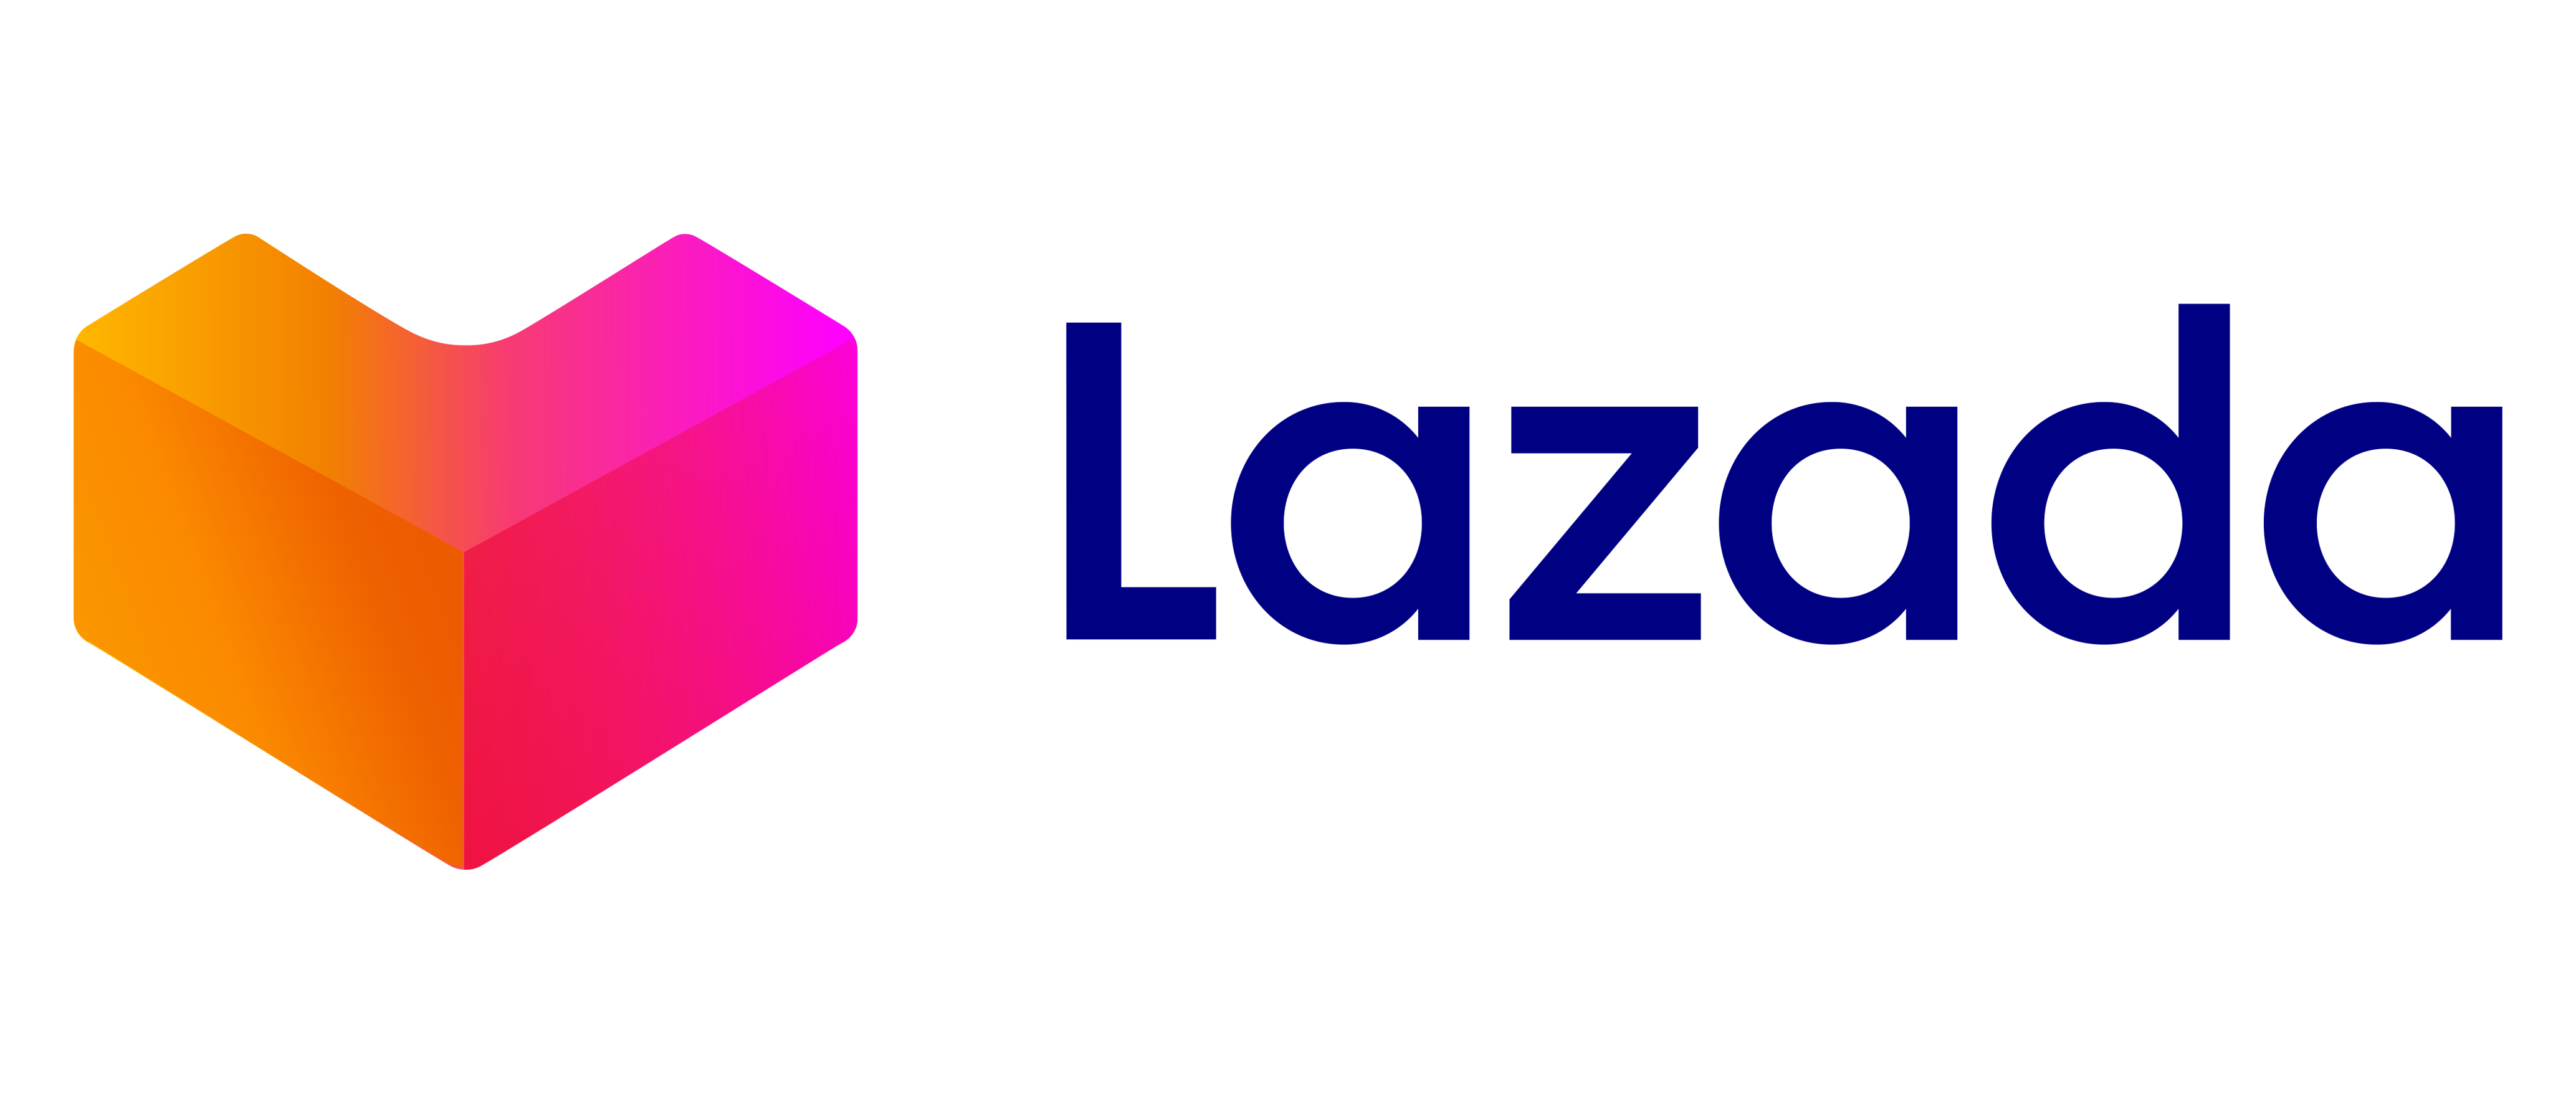 Logo Lazada Baru 2019 (PNG-1080p) - FileVector69